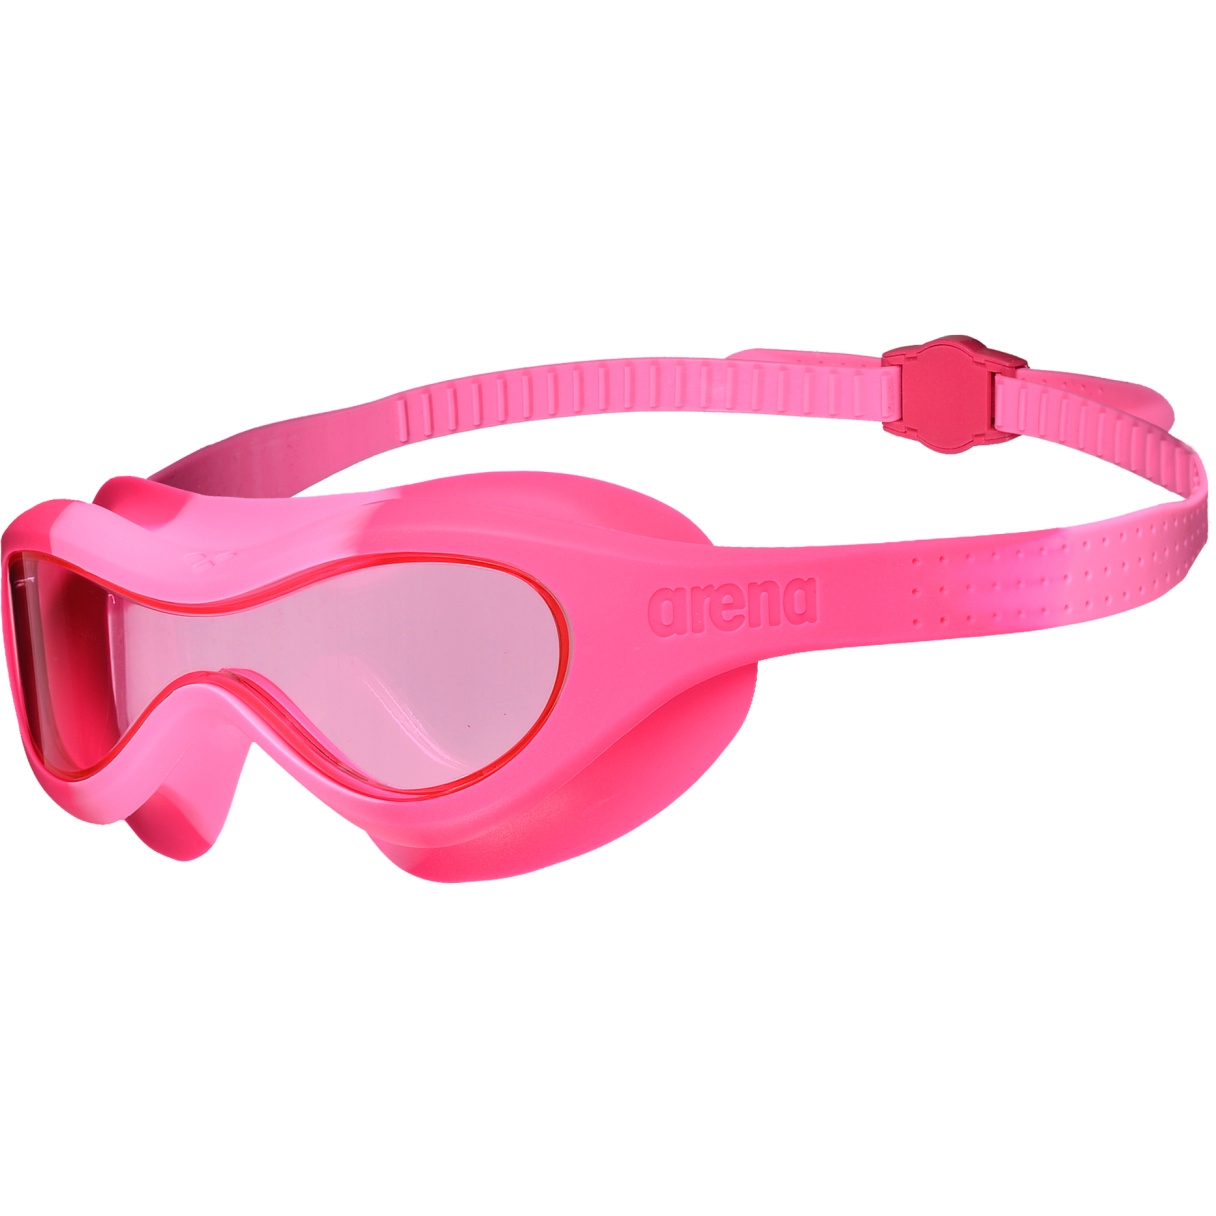 Produktbild von arena Spider Mask Kinder Schwimmmaske - Pink - Freakrose/Pink